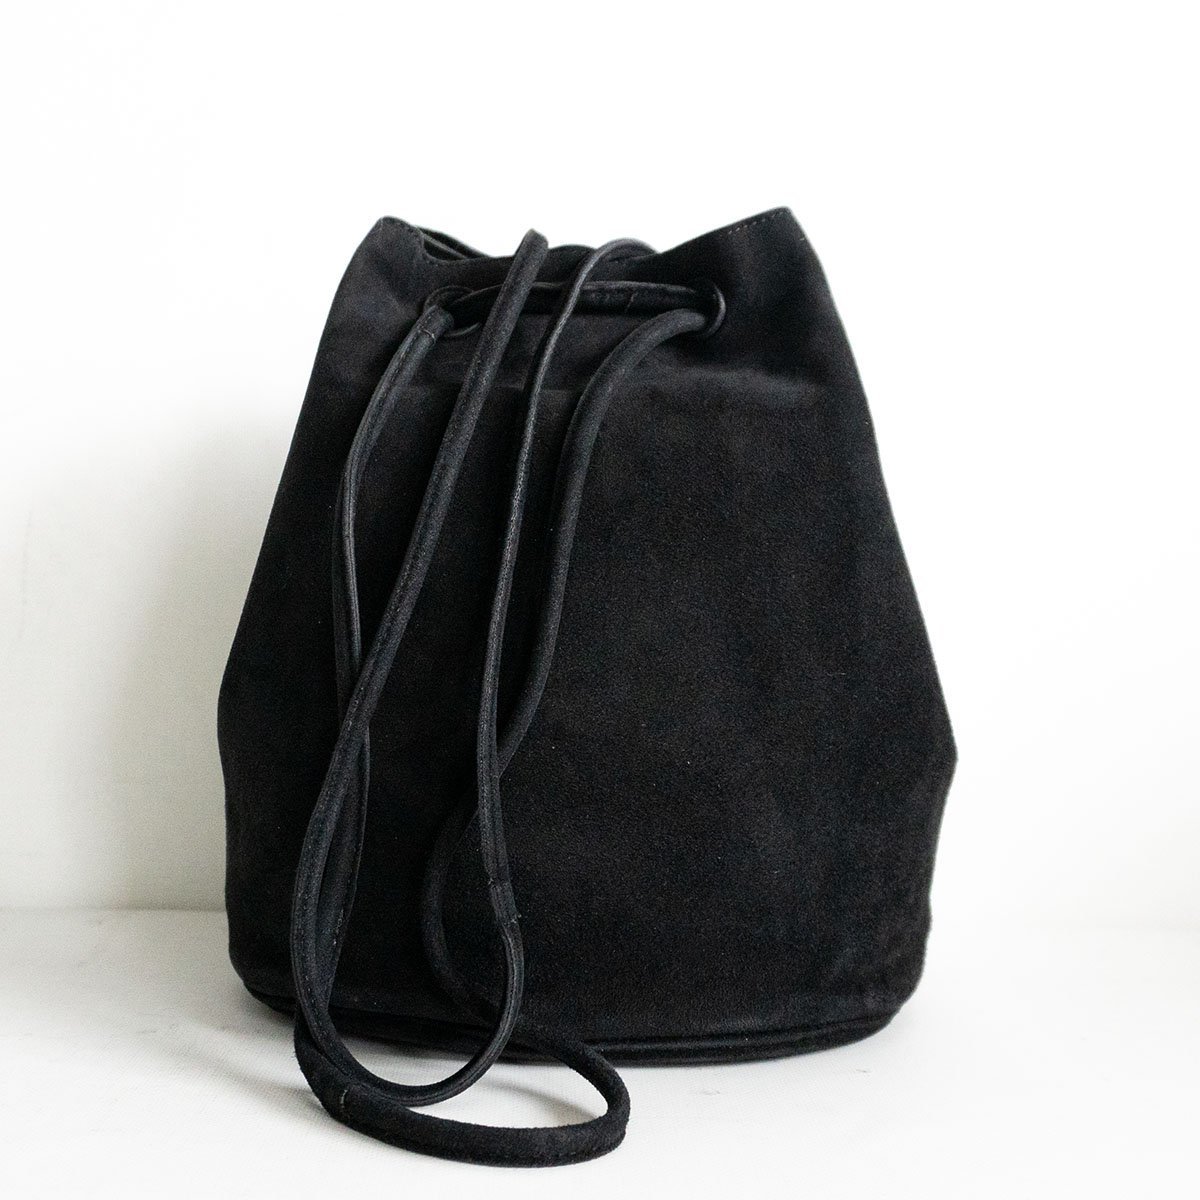 【美品】 ARTS SCIENCE 【Oval lantern bag】 レザー 鞄 革 ランタン バッグ ブラック